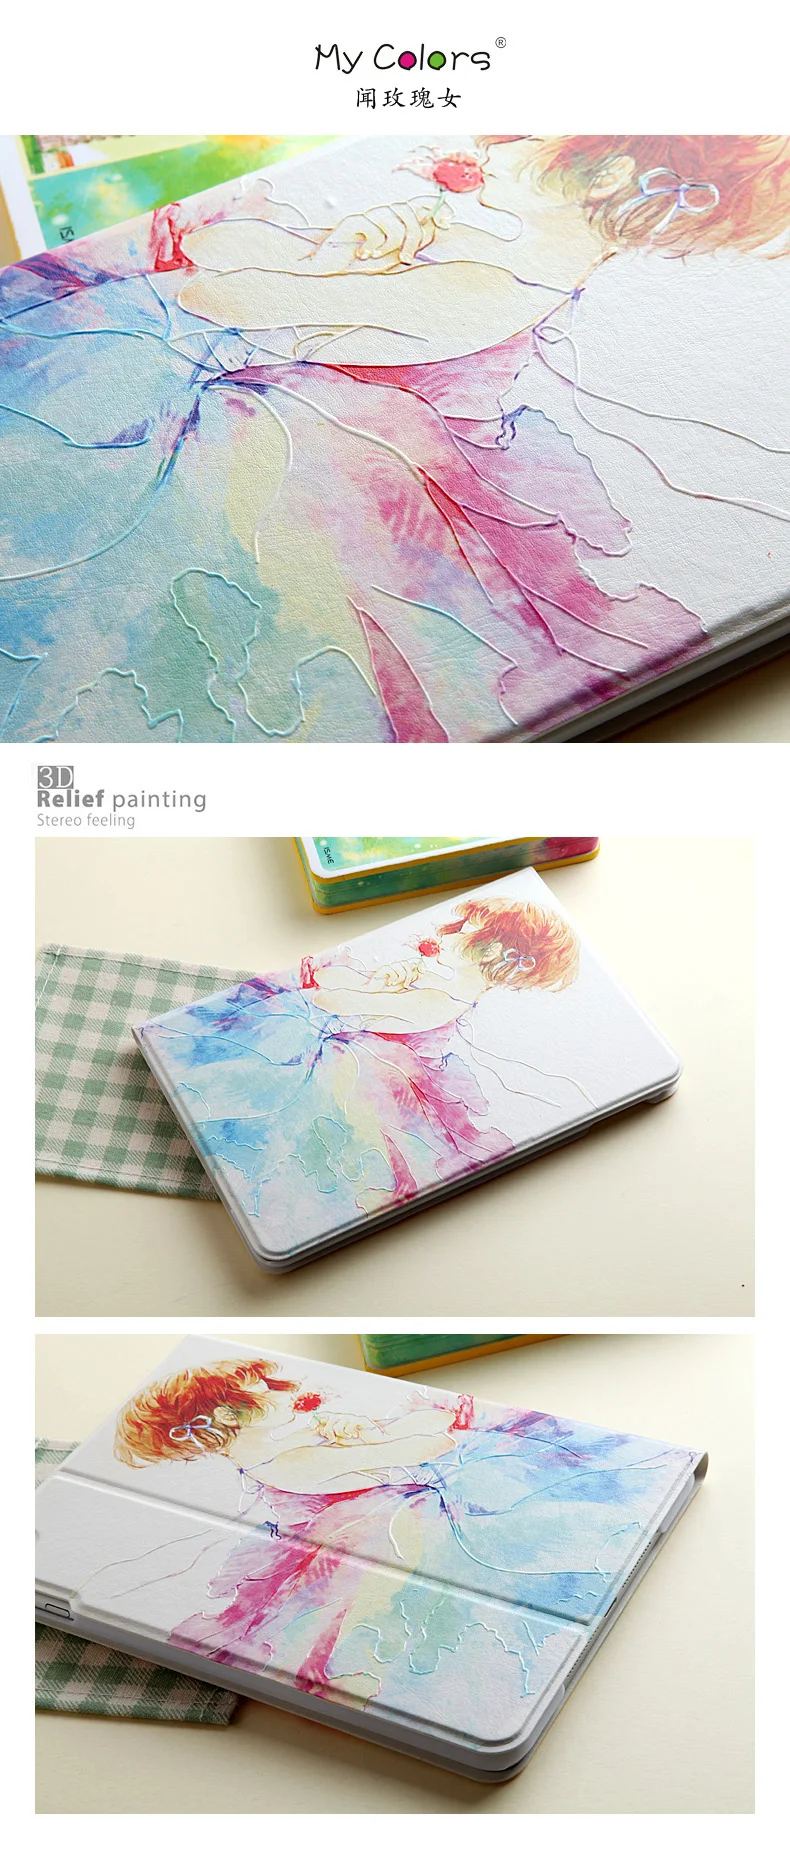 Чехол для iPad mini 4 7,9, GARUNK 3D рельефная живопись стерео ощущение Цветы кожаный чехол-книжка Подставка для Ipad Mini 4 планшета